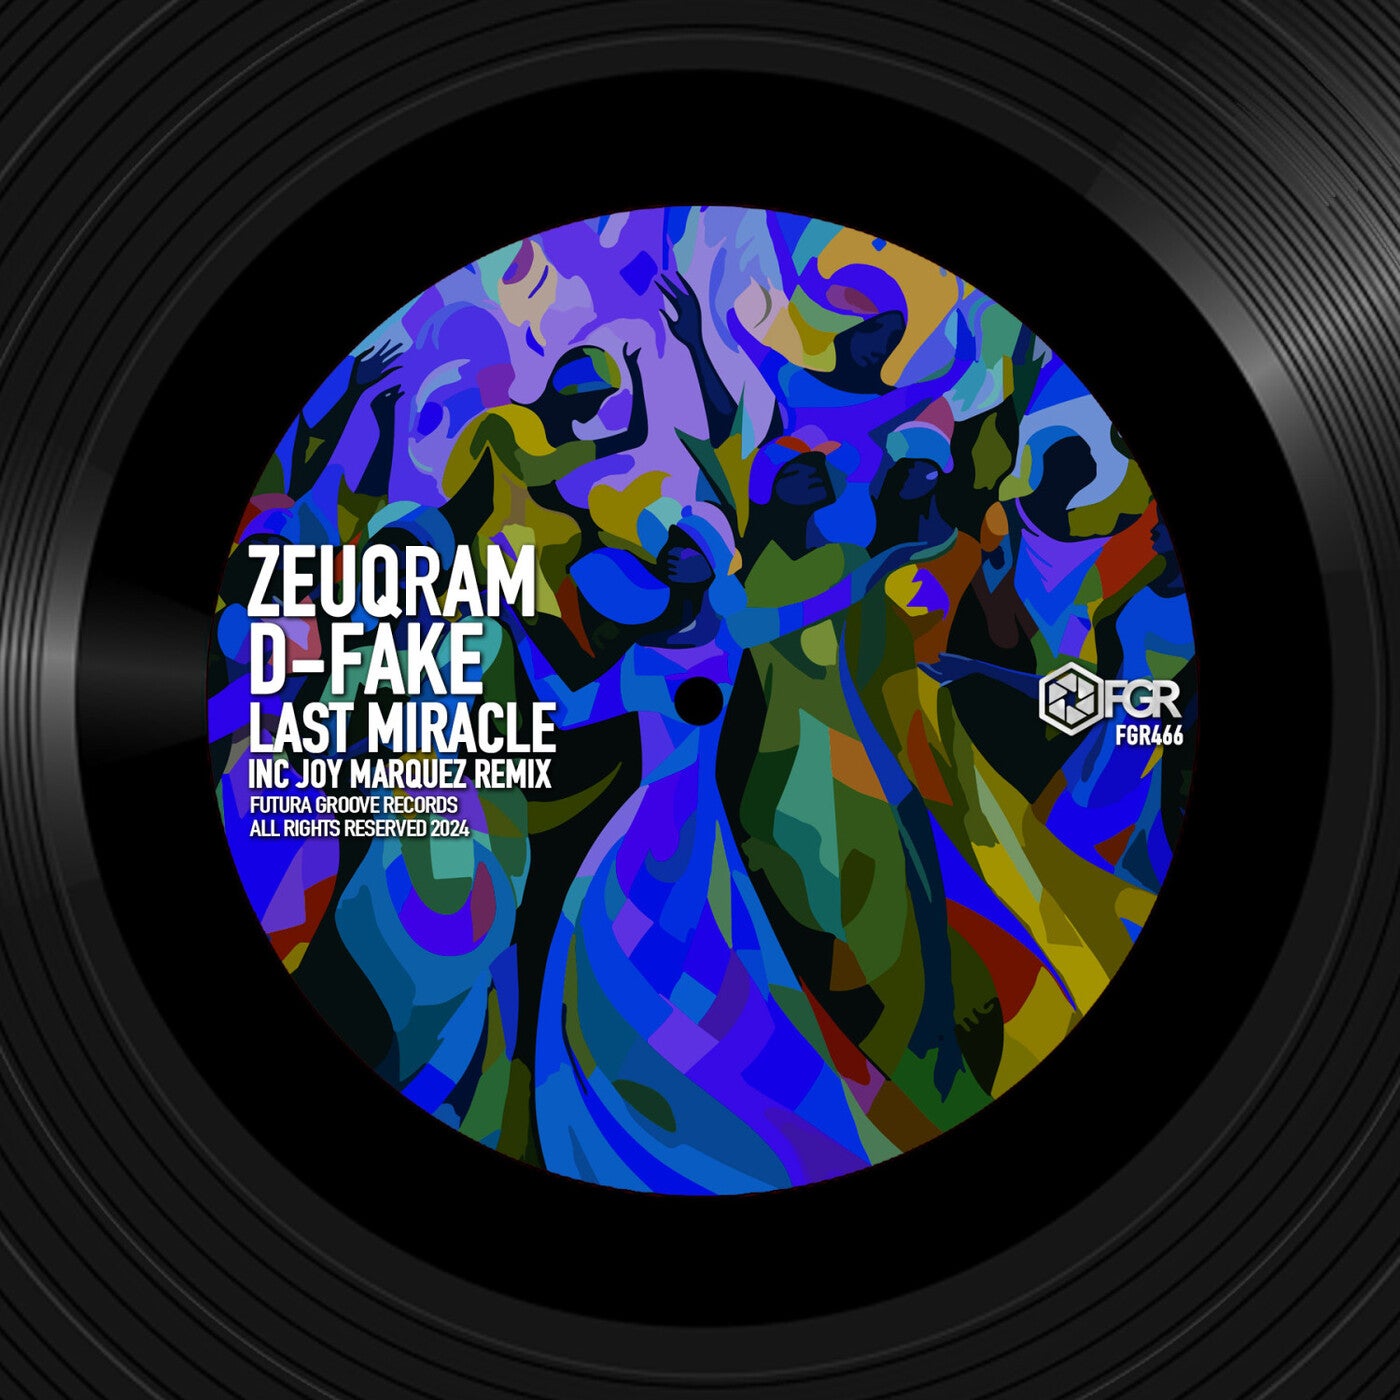 Cover - Zeuqram, D-Fake - Last Miracle (Joy Marquez Remix)